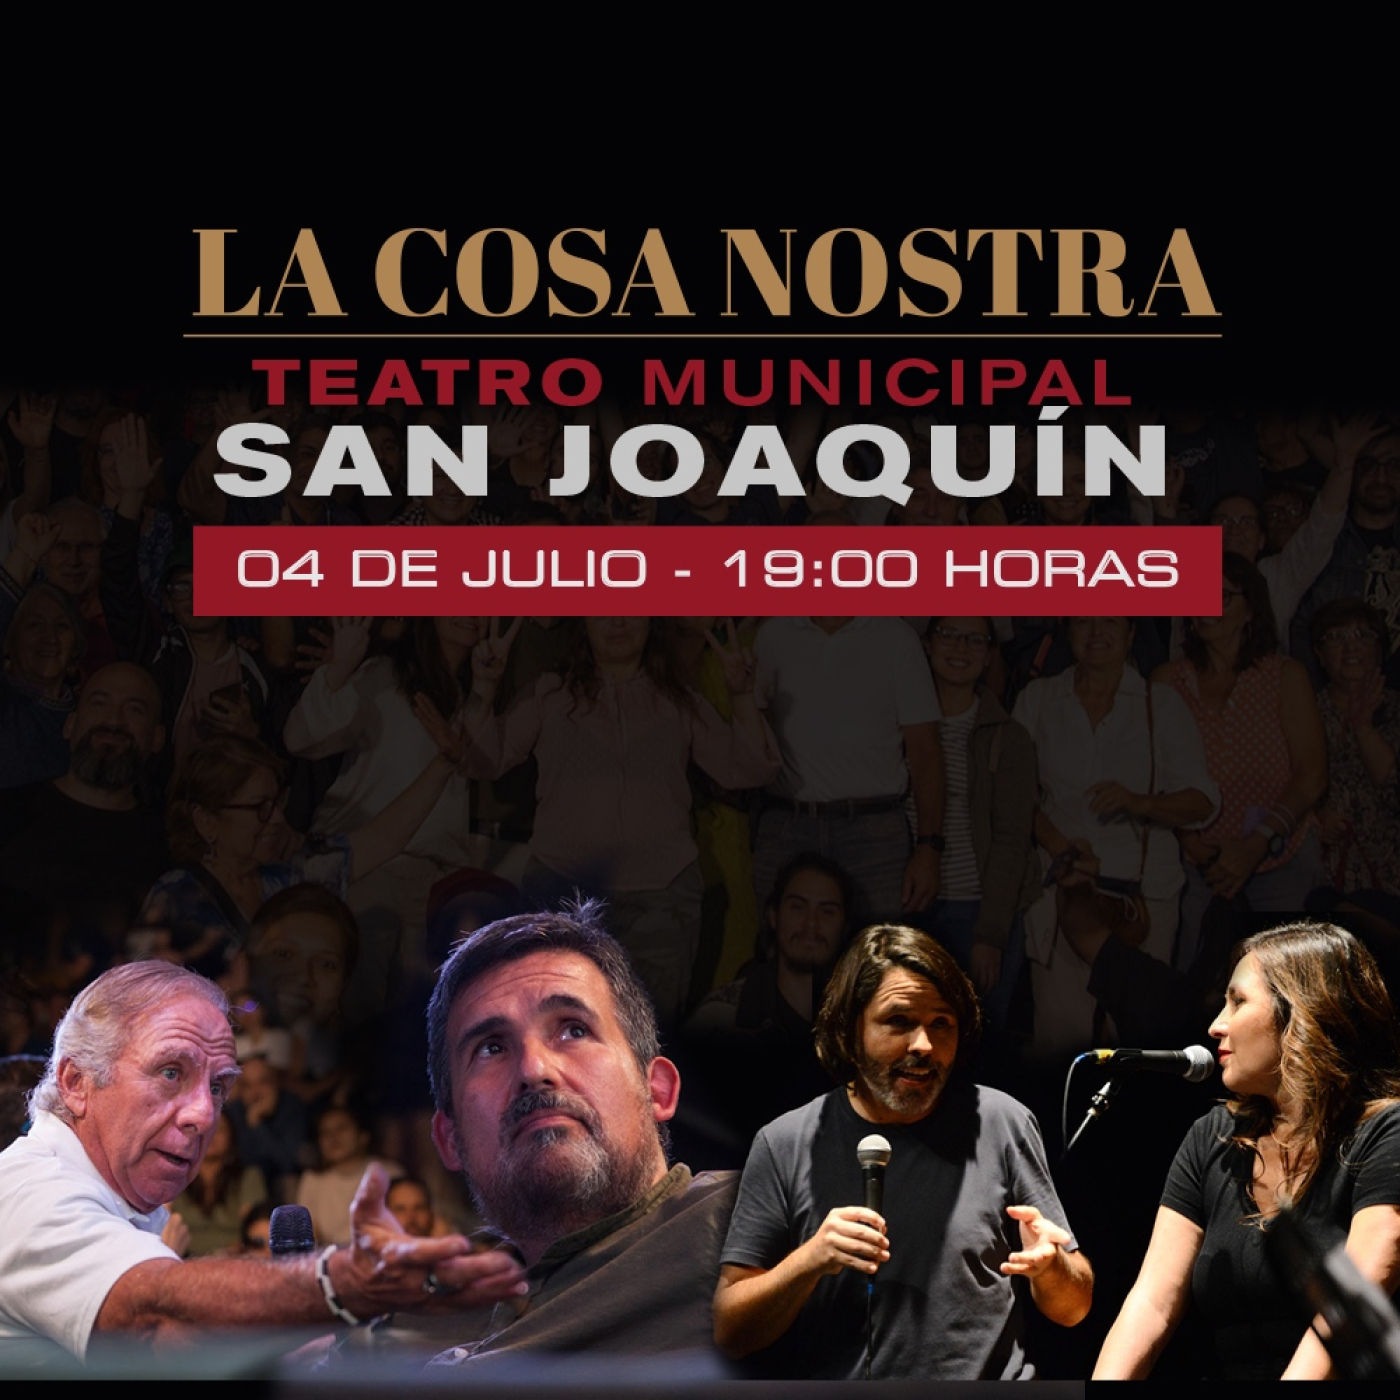 La Cosa Nostra en vivo desde el Teatro Municipal de San Joaquín